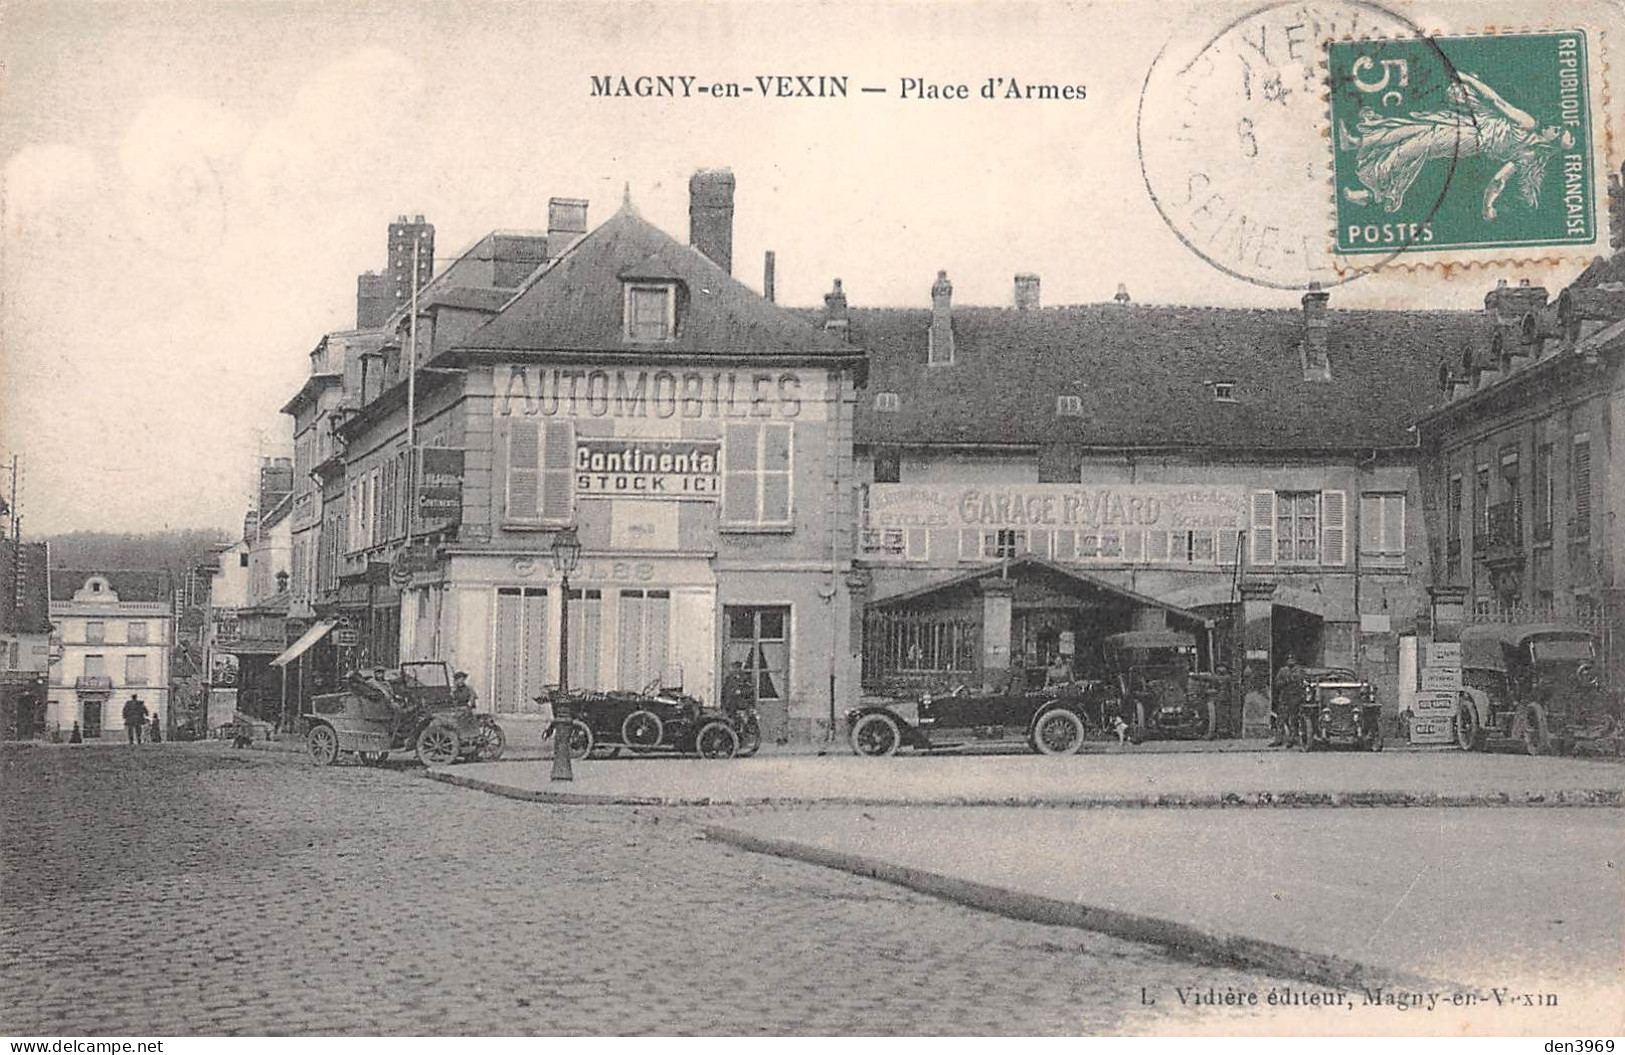 MAGNY-en-VEXIN (Val-d'Oise) - Place D'Armes - Garage Automobiles R. Viard - Voyagé 1915 (2 Scans) Charenton 10 R Mouquet - Magny En Vexin